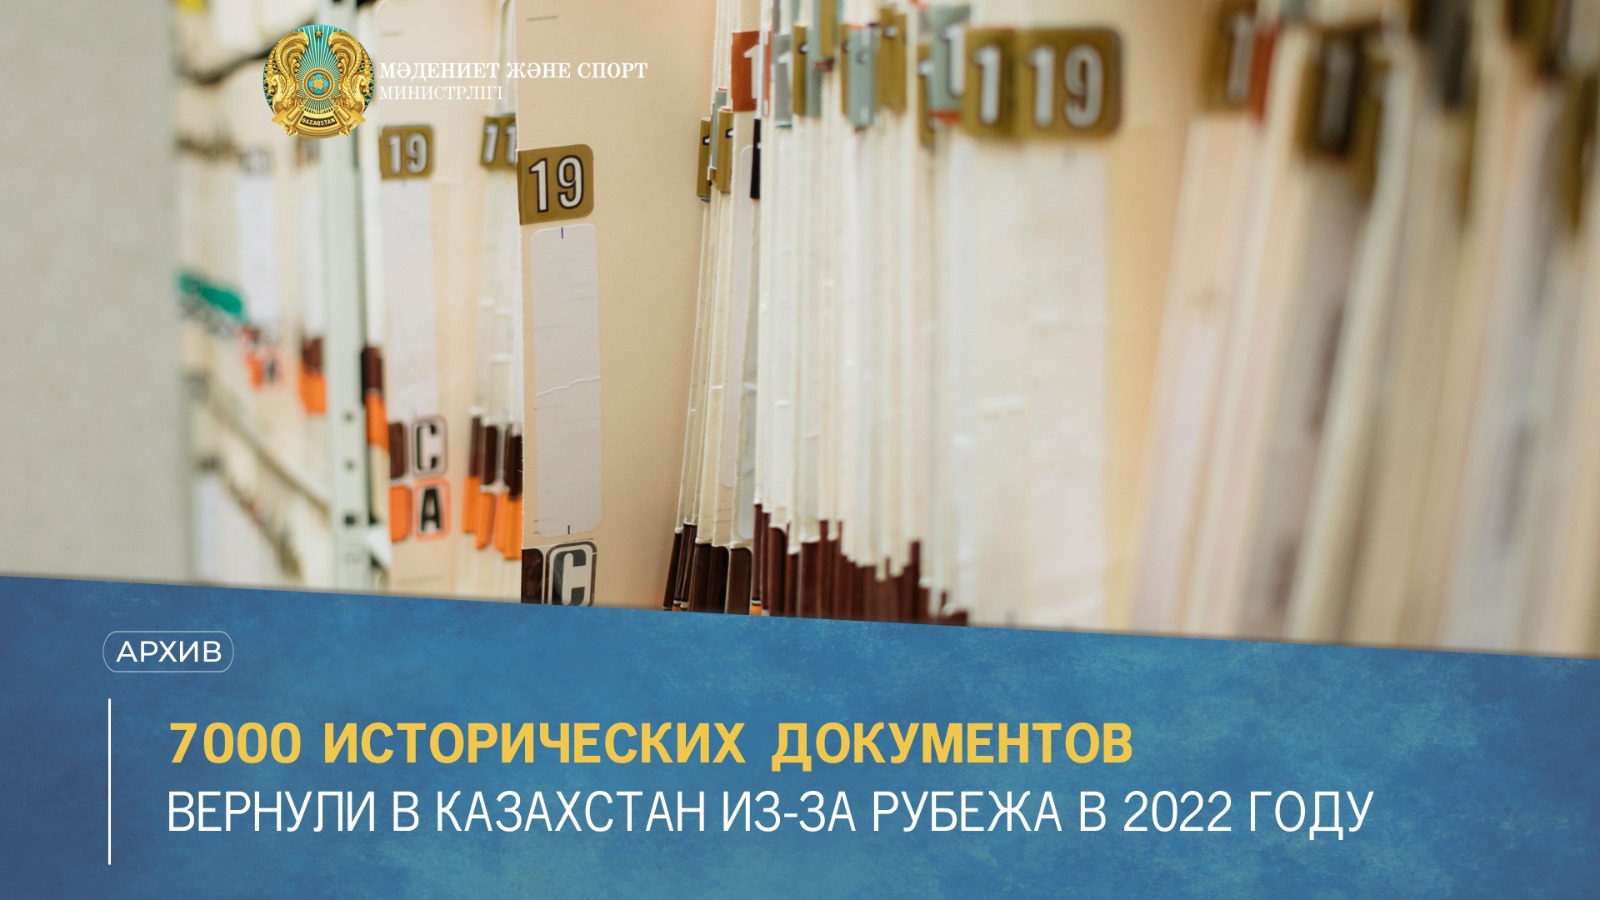 7000 исторических документов вернули в Казахстан из-за рубежа в 2022 году